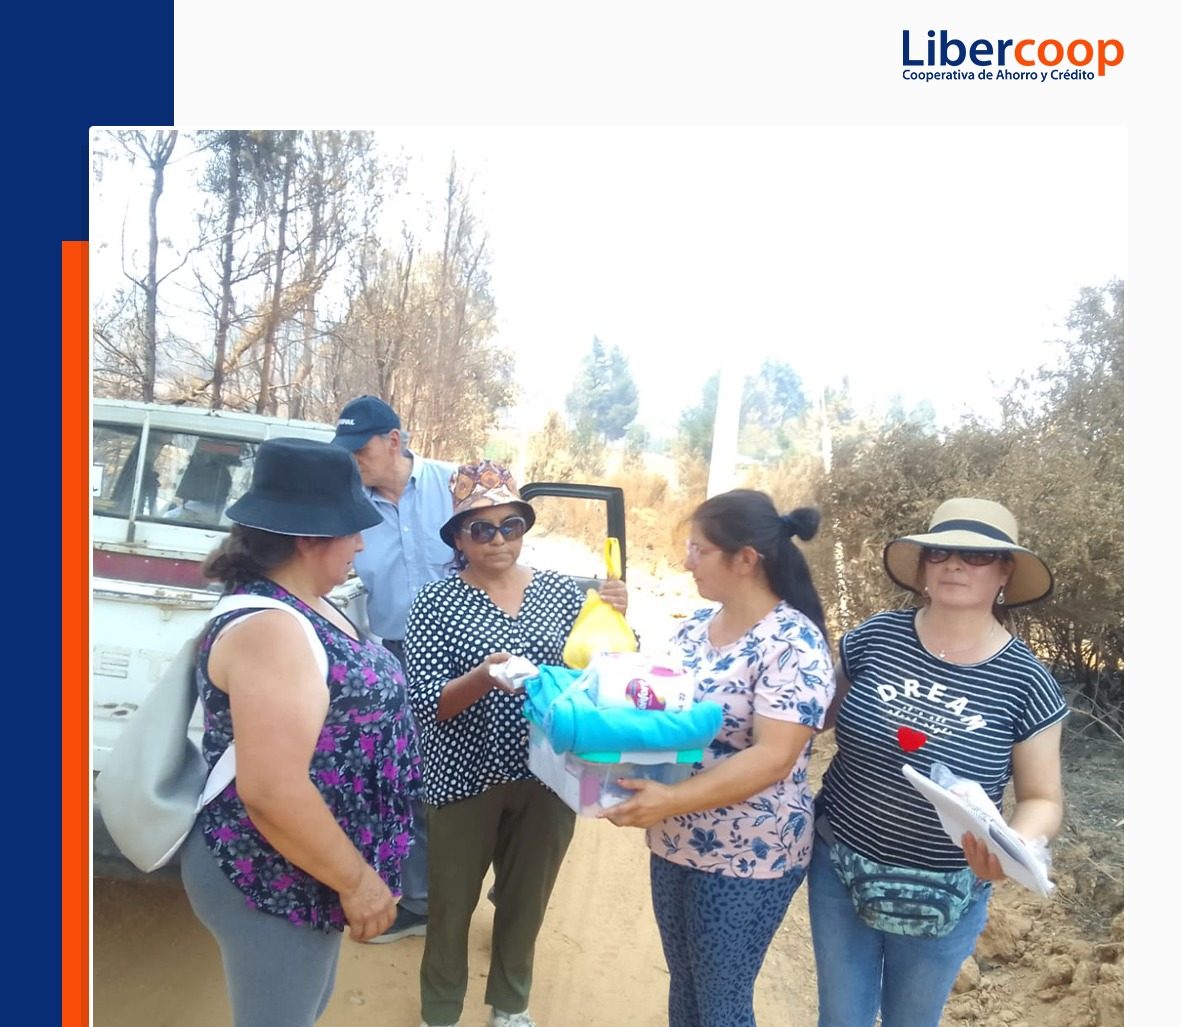 Libercoop ayuda a personas afectadas por incendios forestales